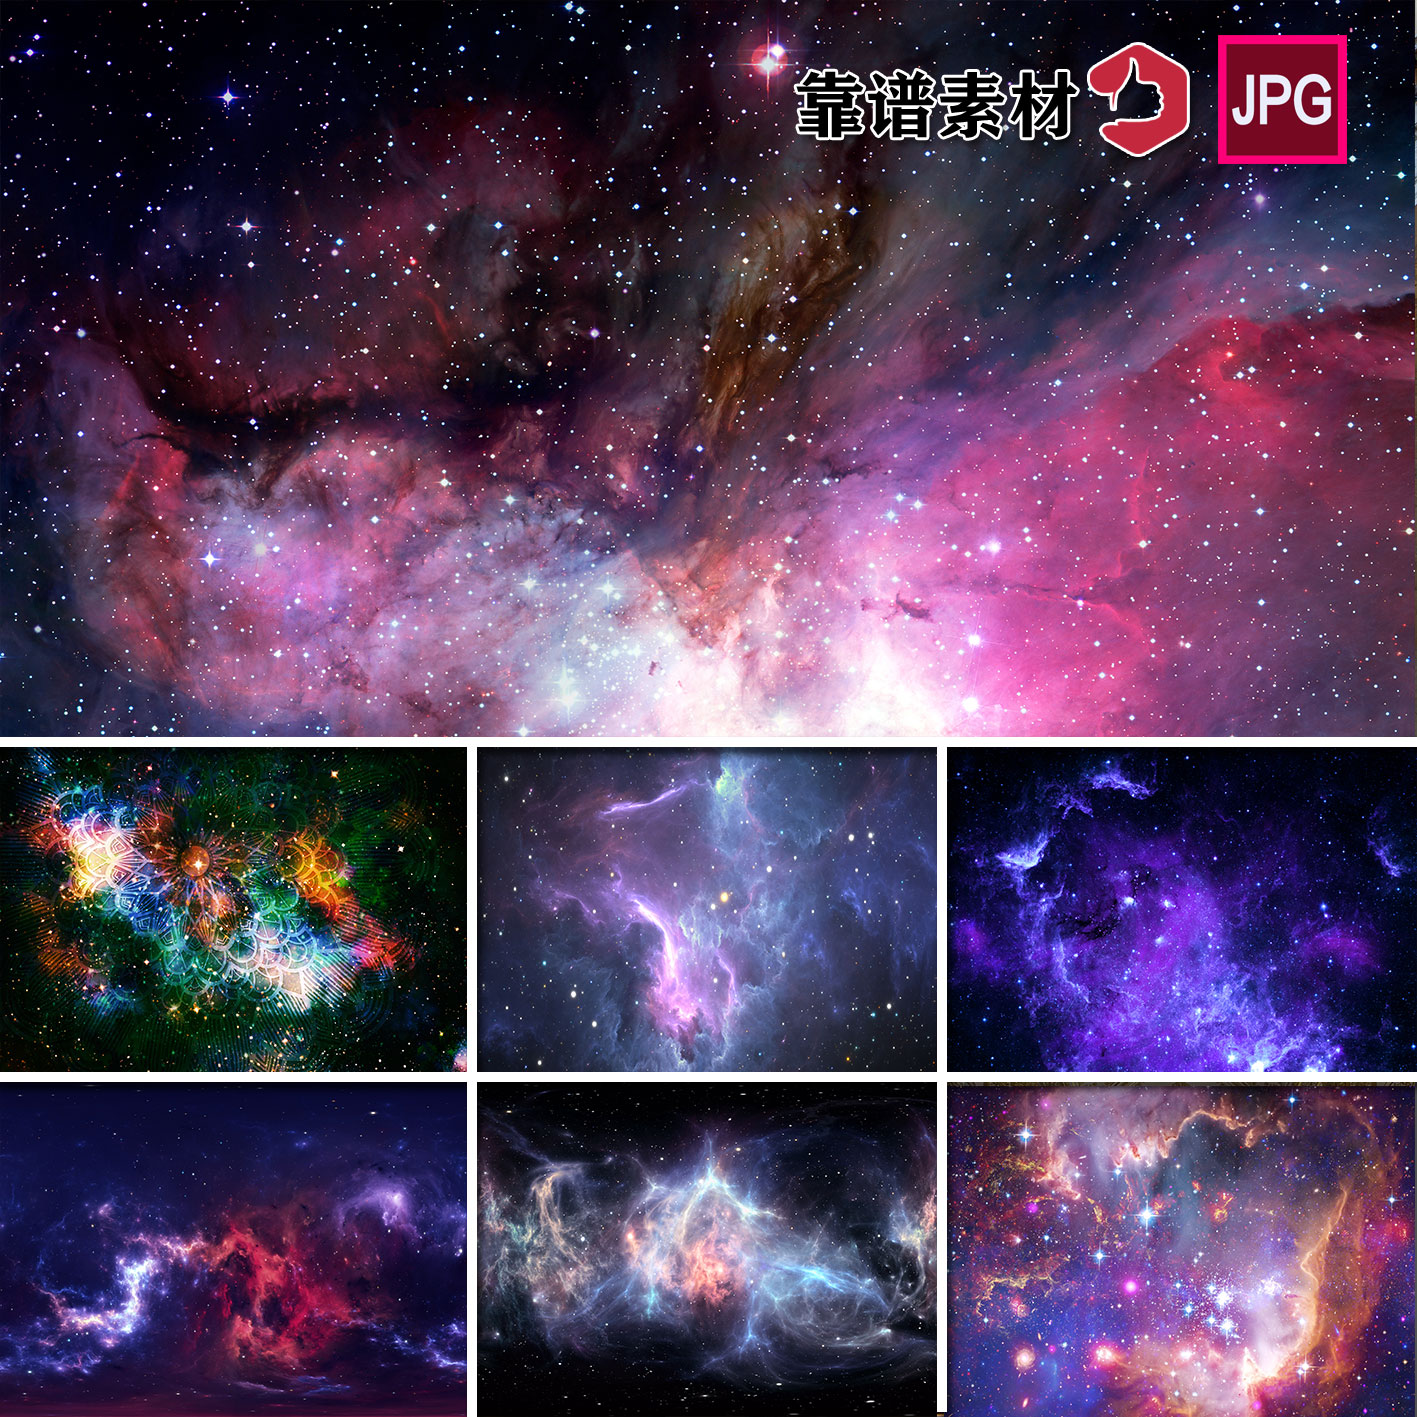 宇宙太空美丽星云银河星空壁纸墙纸背景墙JPG高清图片设计素材